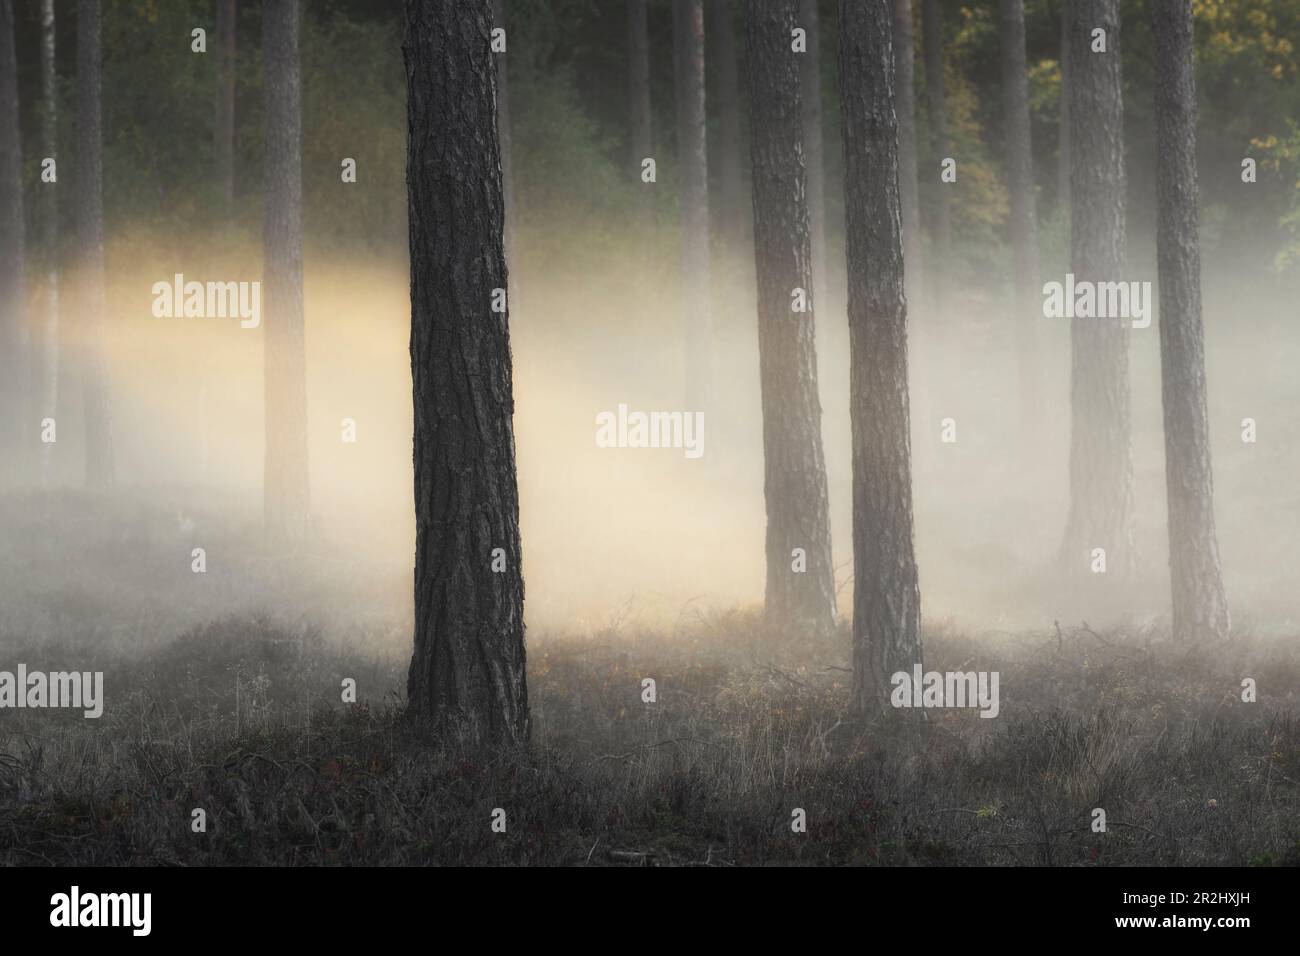 Les arbres de la forêt ouverte se tiennent dans le brouillard. Rayons de soleil chauds. Pas de paradis Byxelkrok, Oland, Suède. Banque D'Images